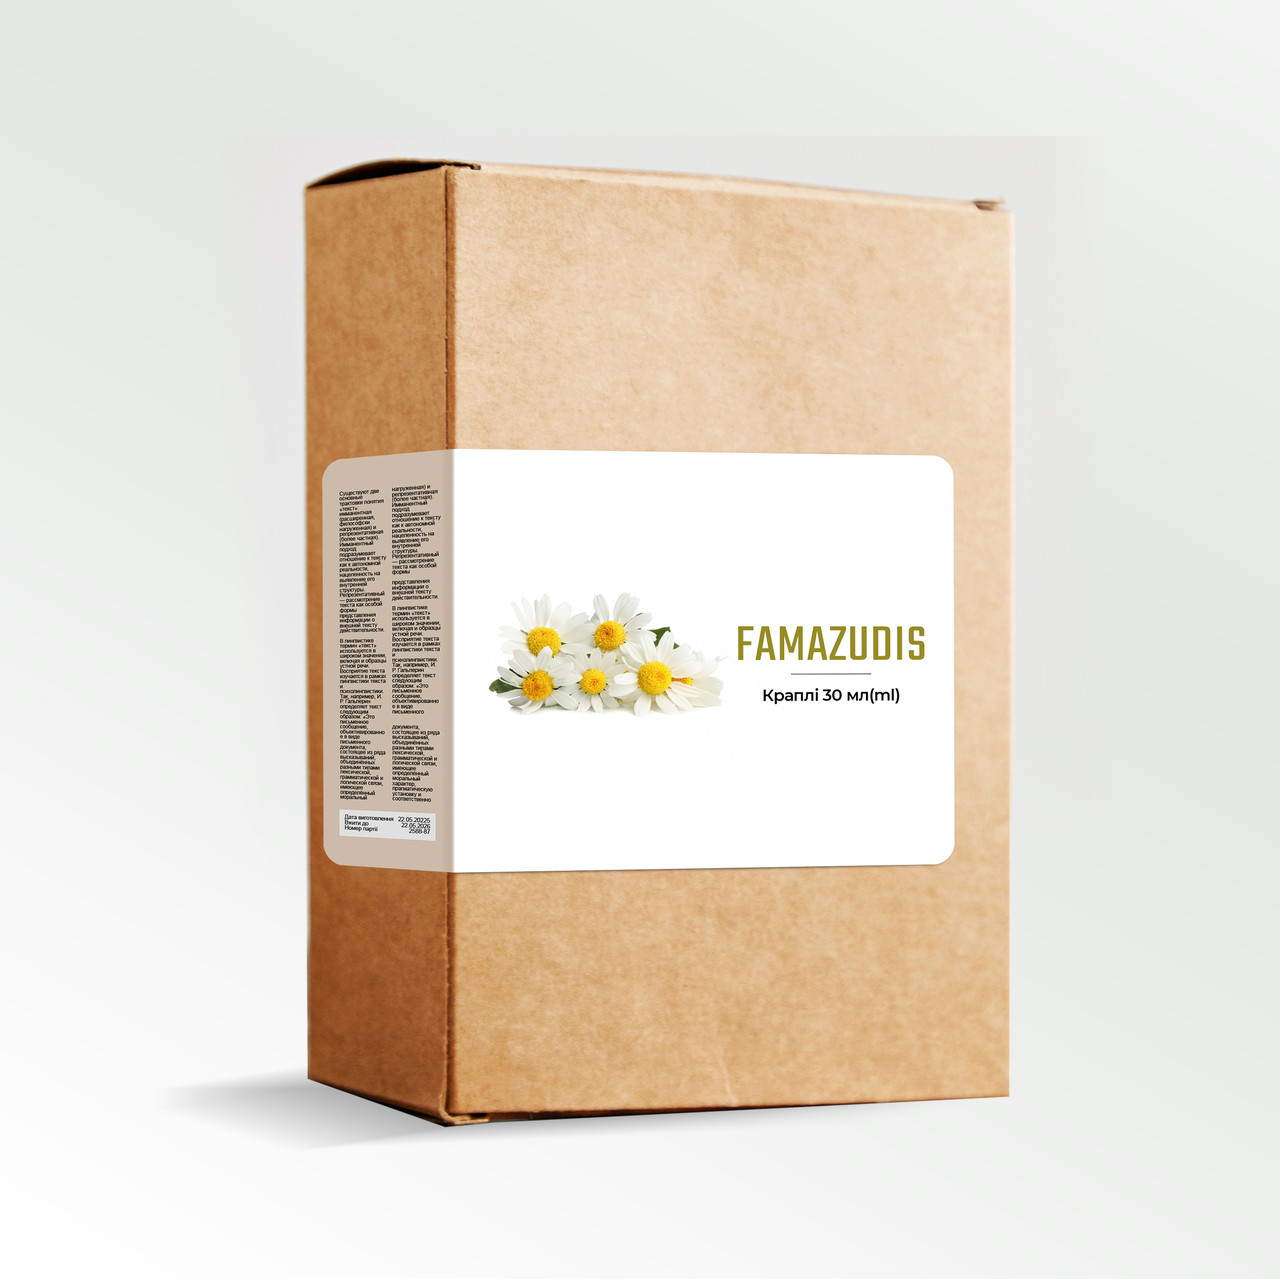 Famazudis (Фамазудис) - краплі від паразитів